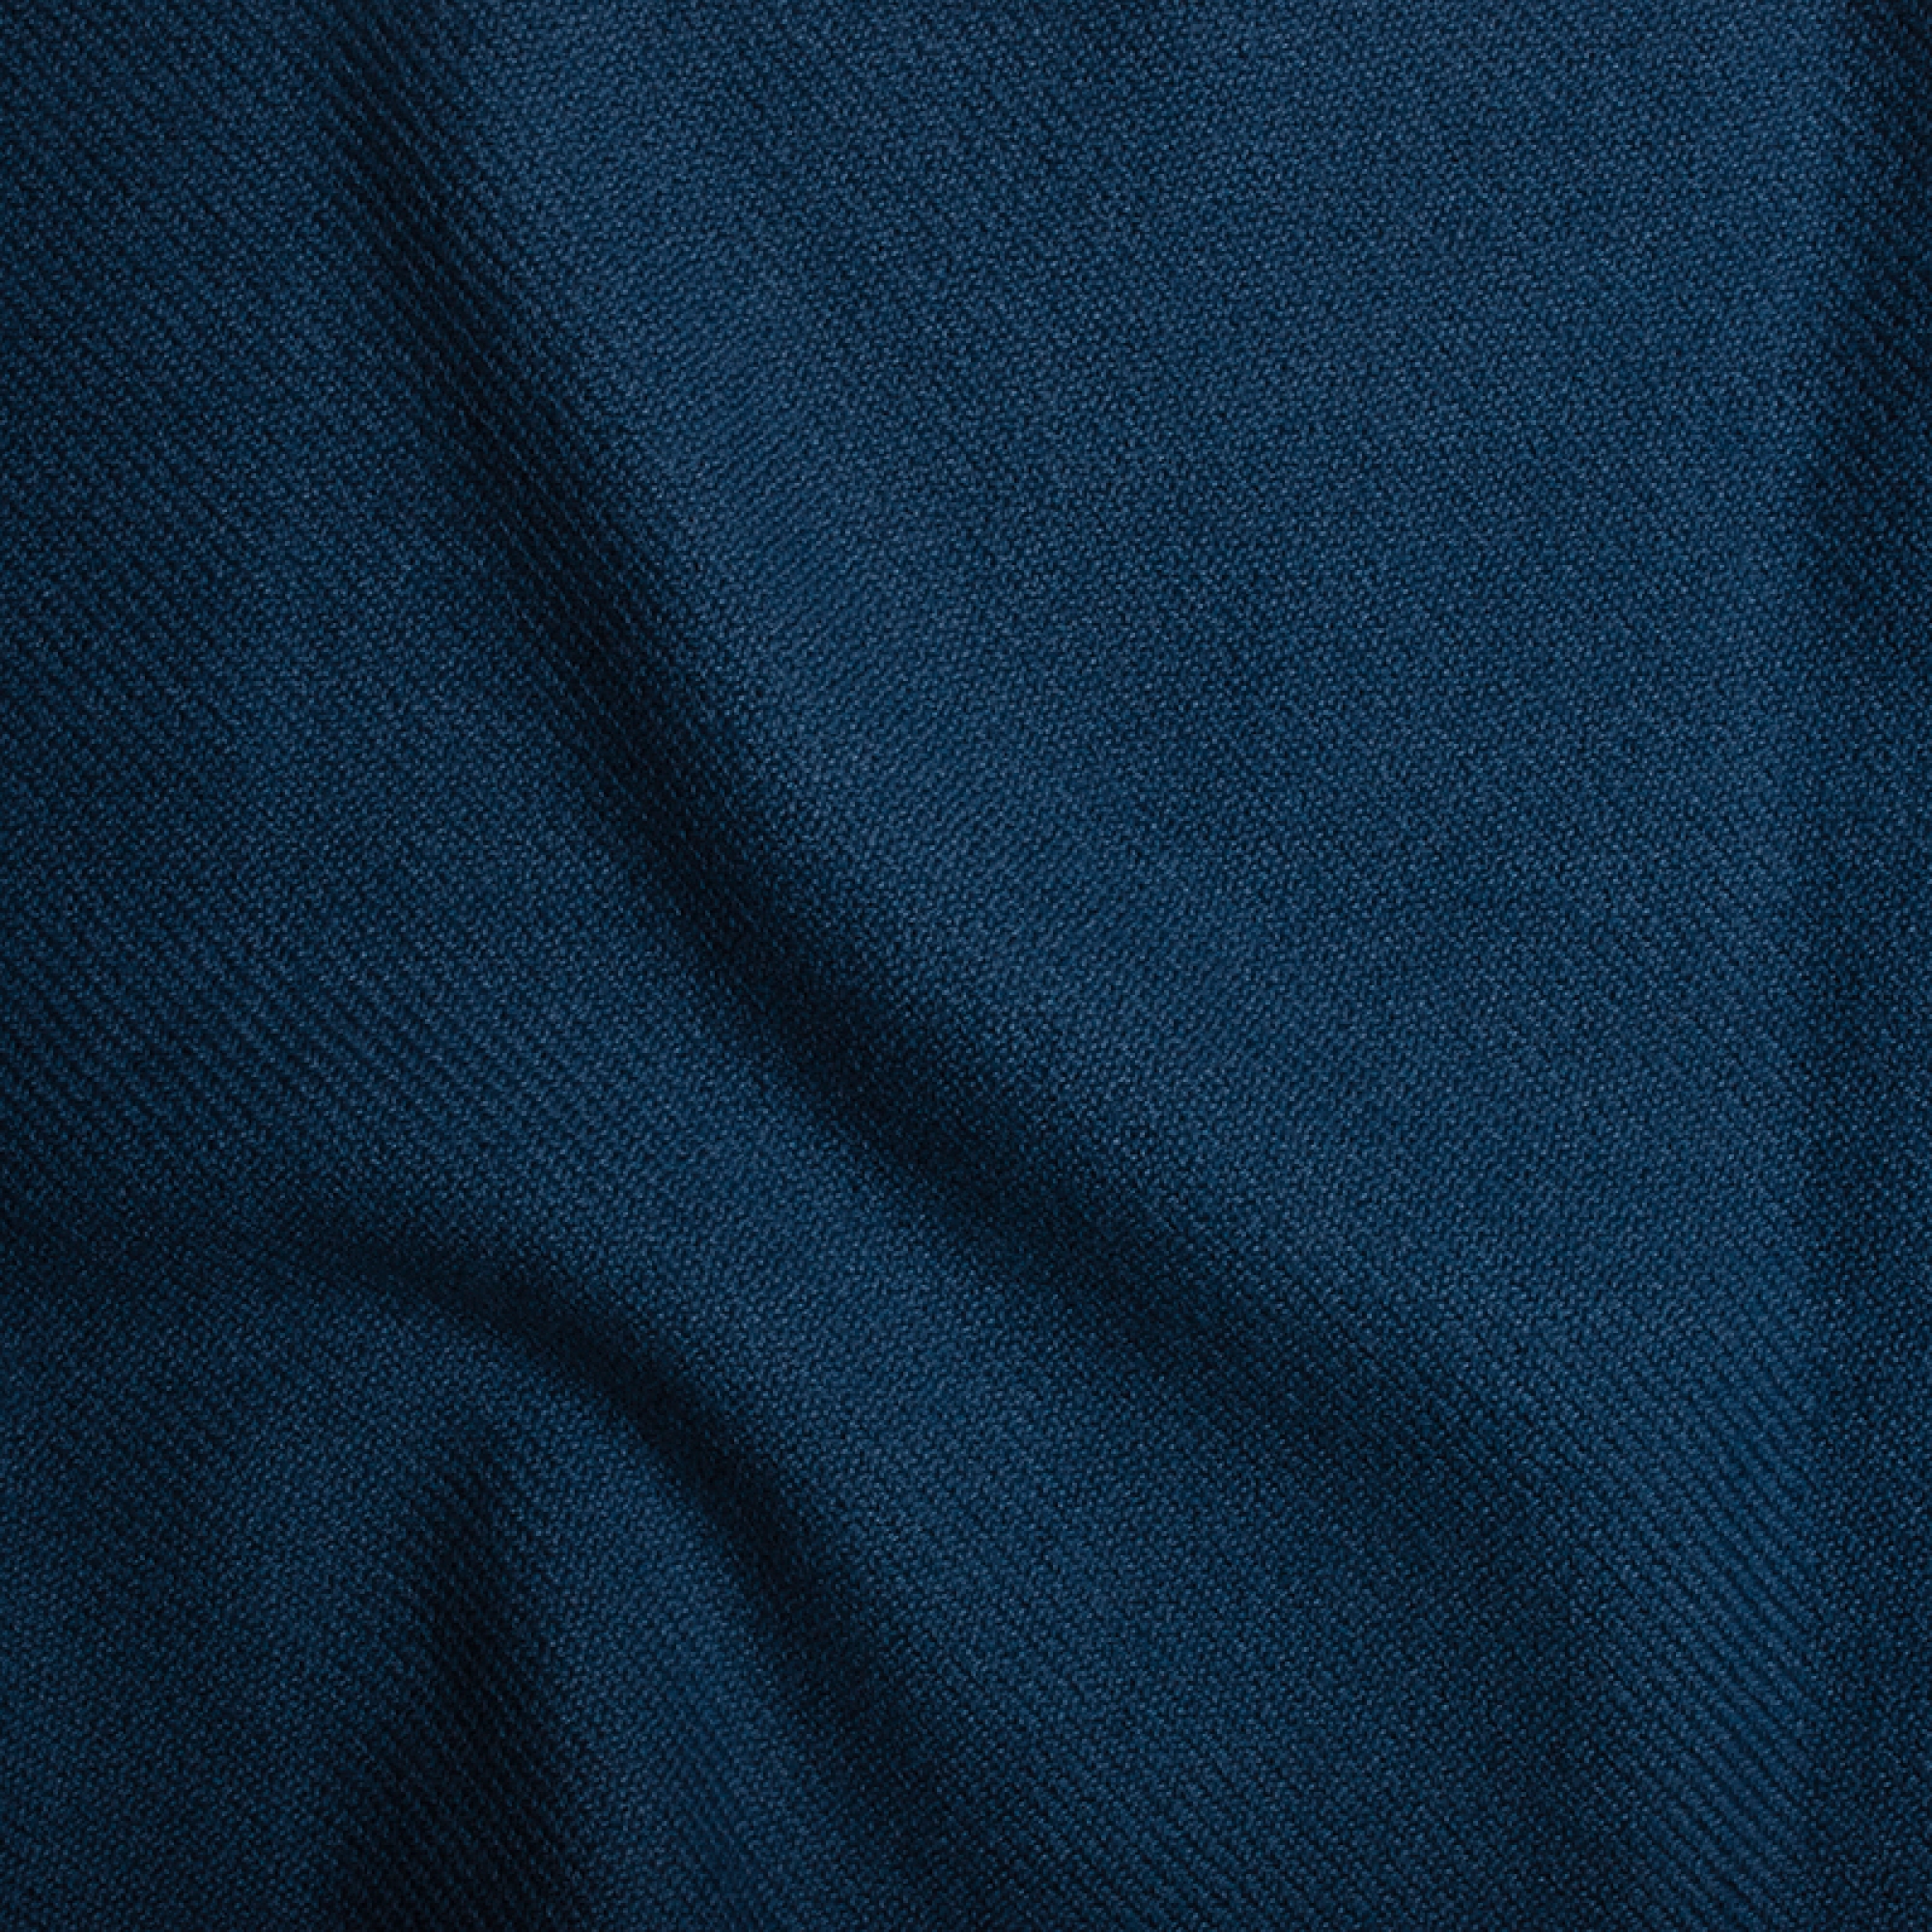 Cashmere accessories toodoo plain l 220 x 220 dark blue 220x220cm